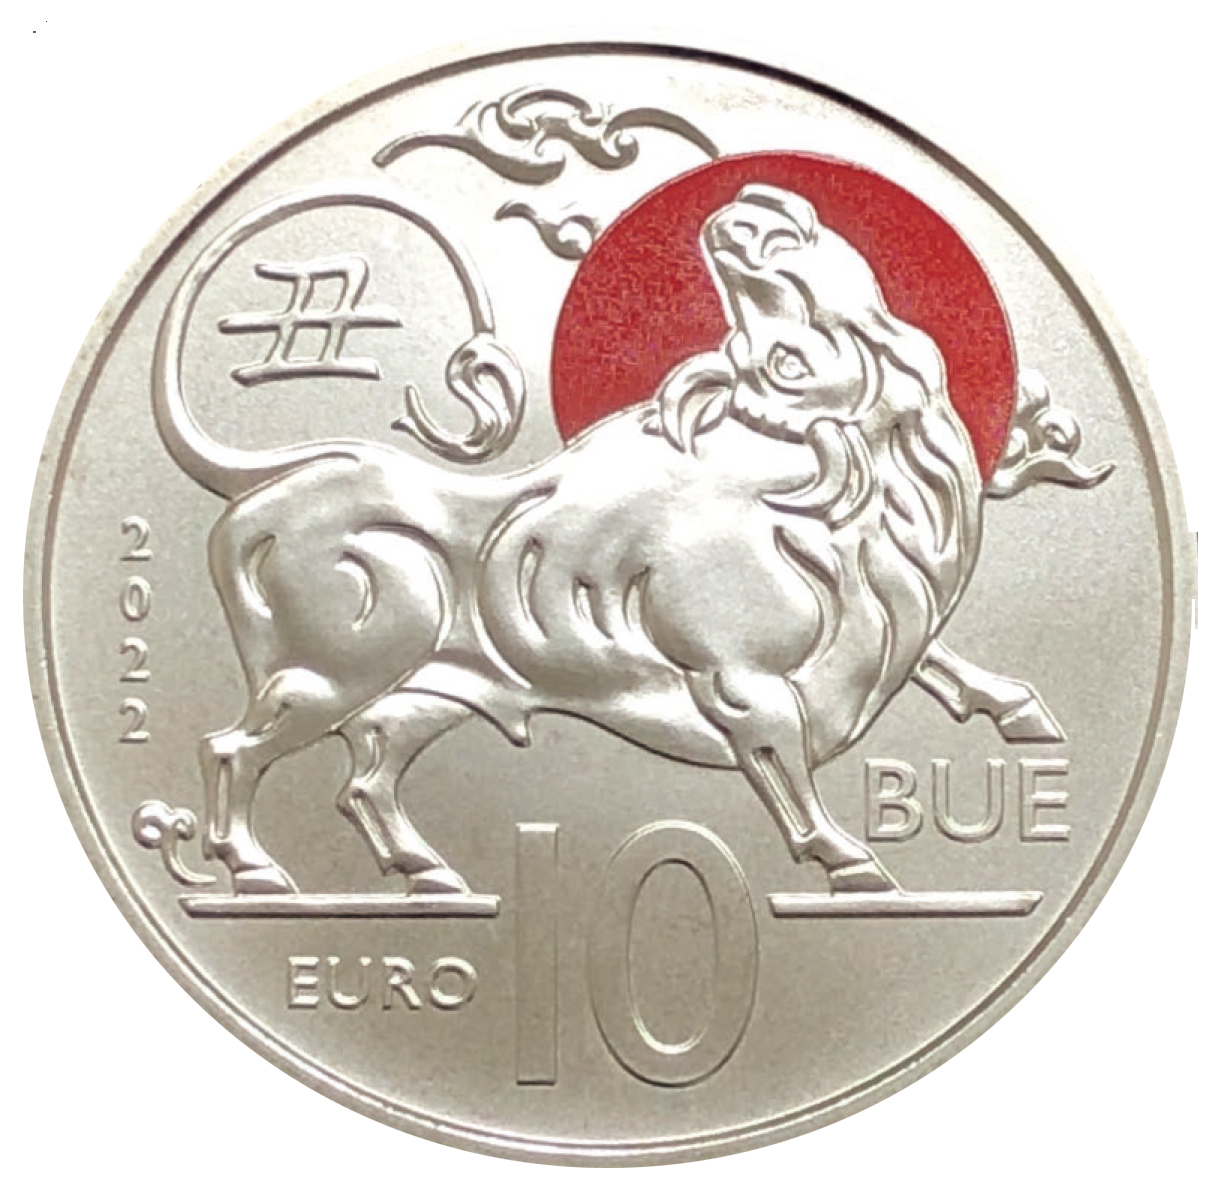 San Marino. Nuove monete da collezione dedicate al Calendario lunare cinese  - libertas